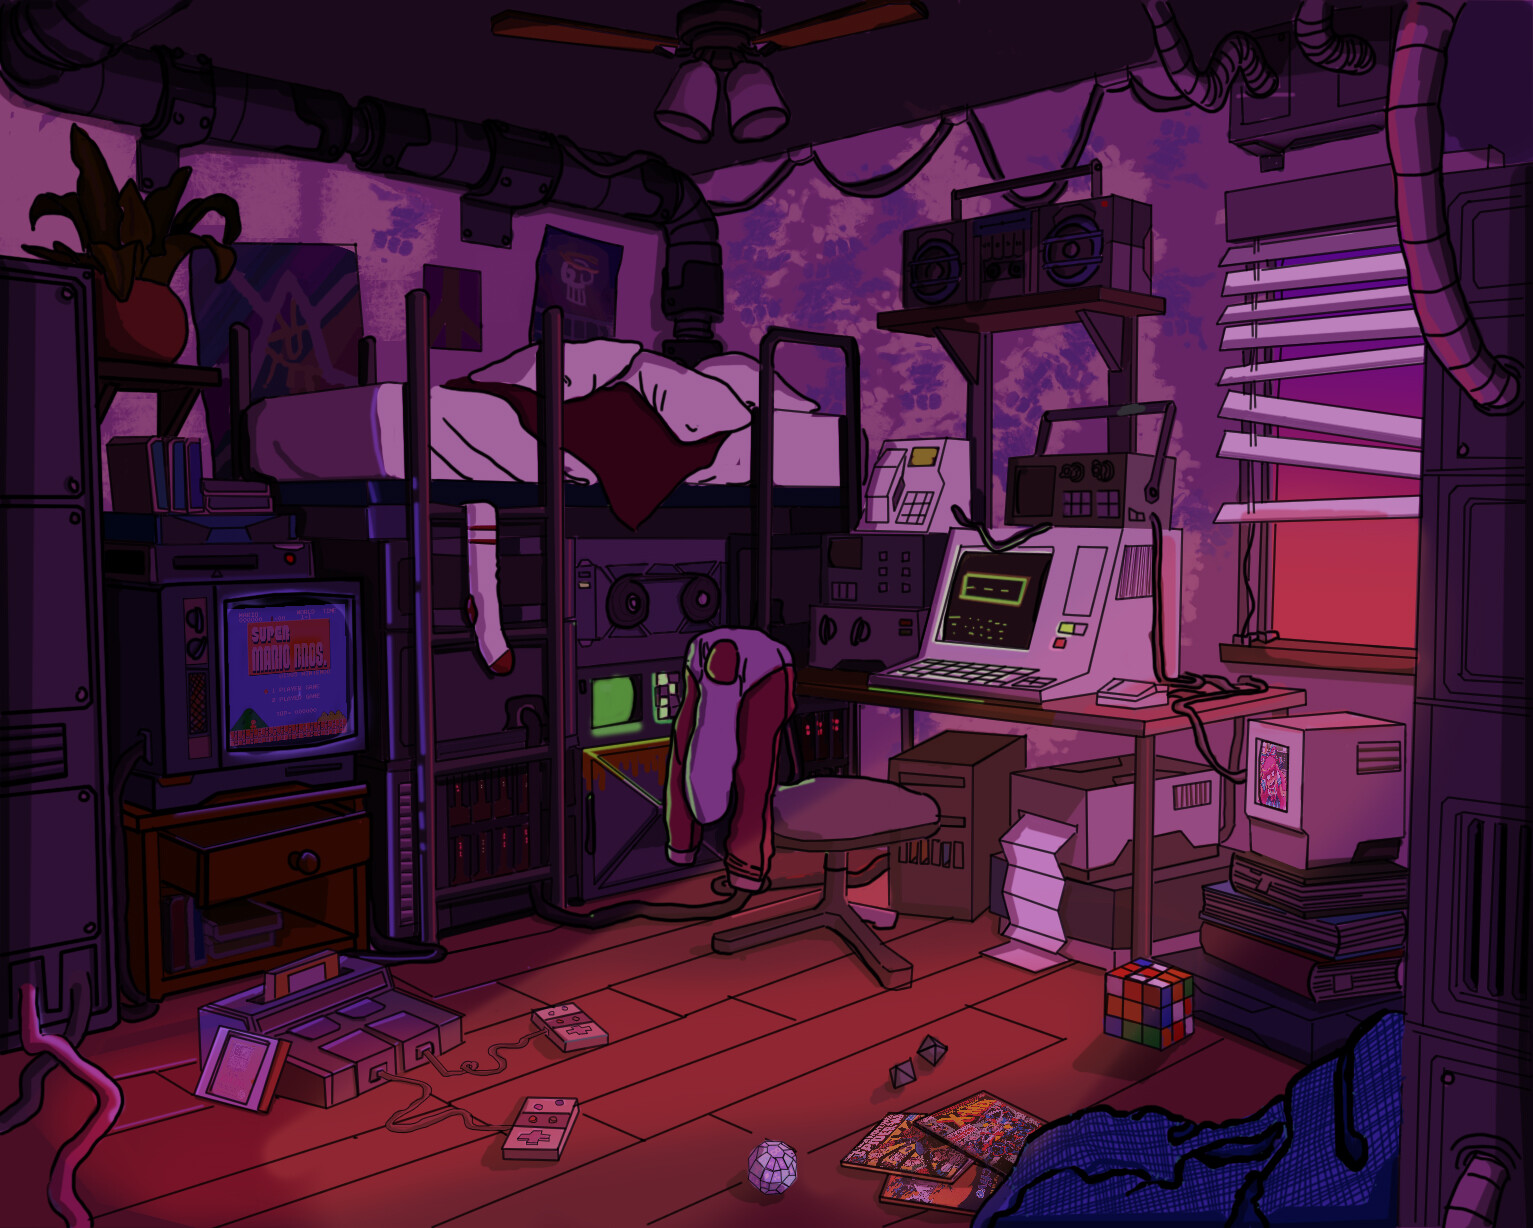 ArtStation - Room at Twilight